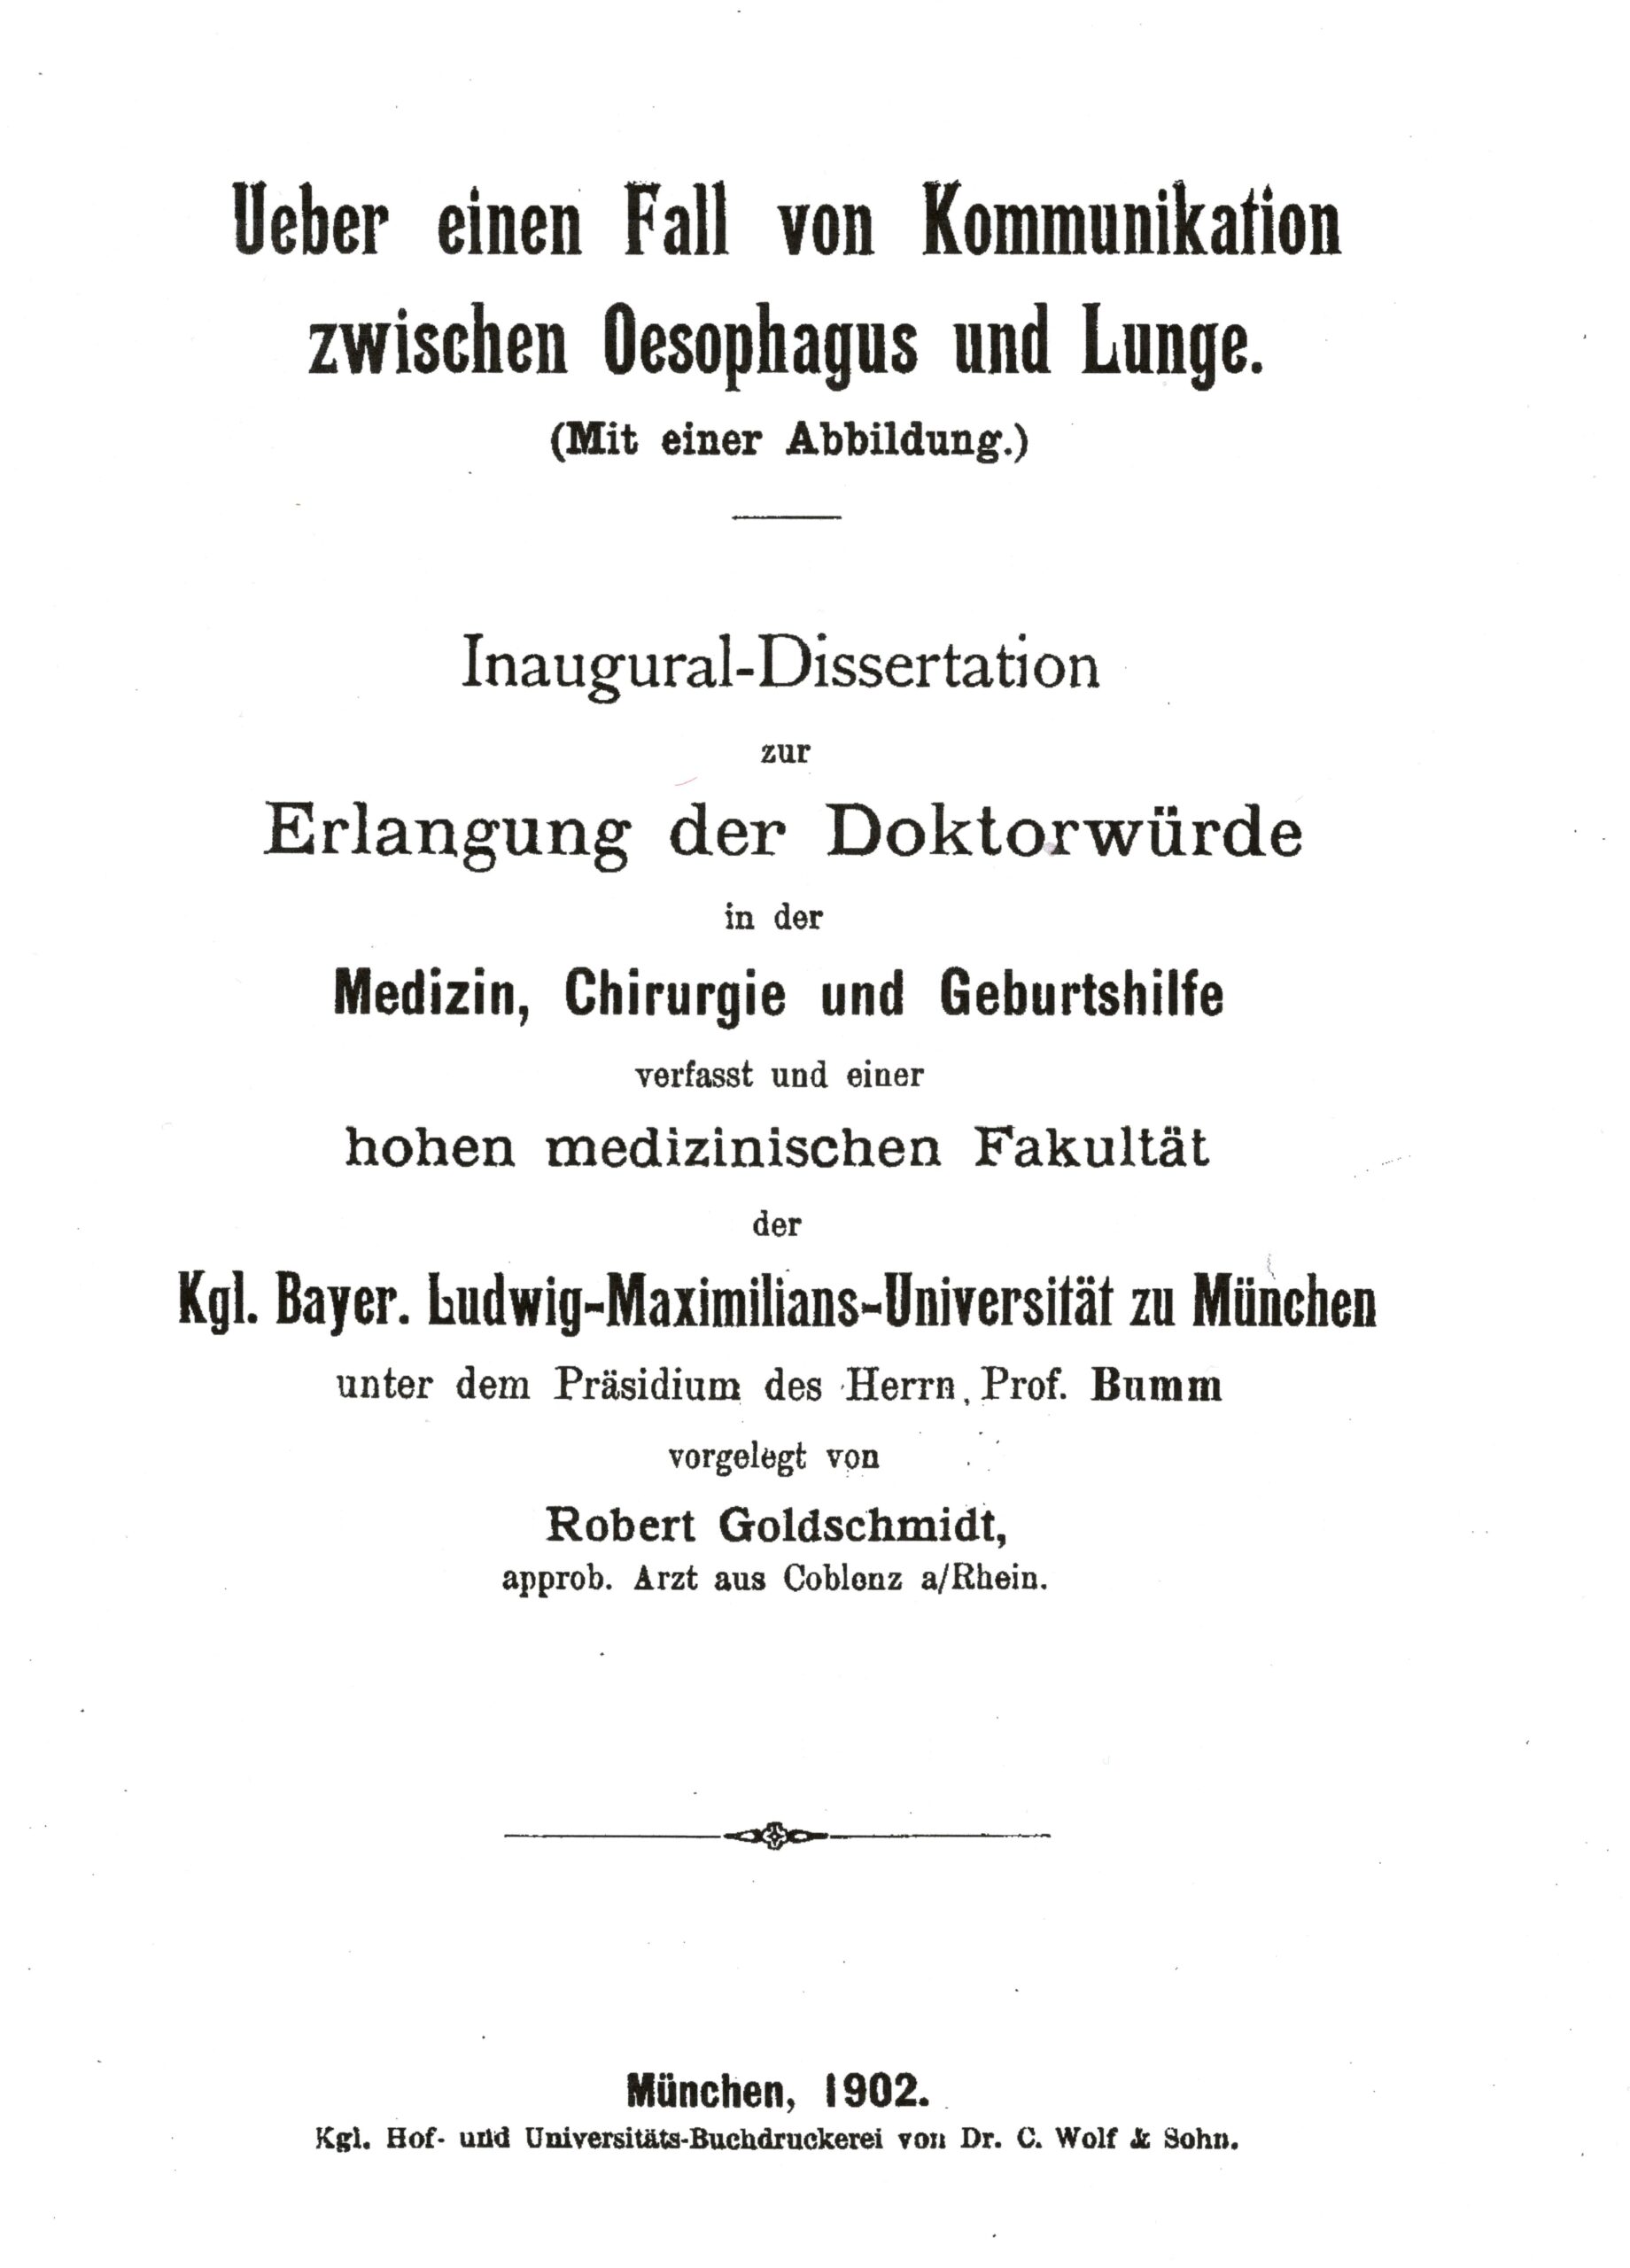 Dissertation, München 1902